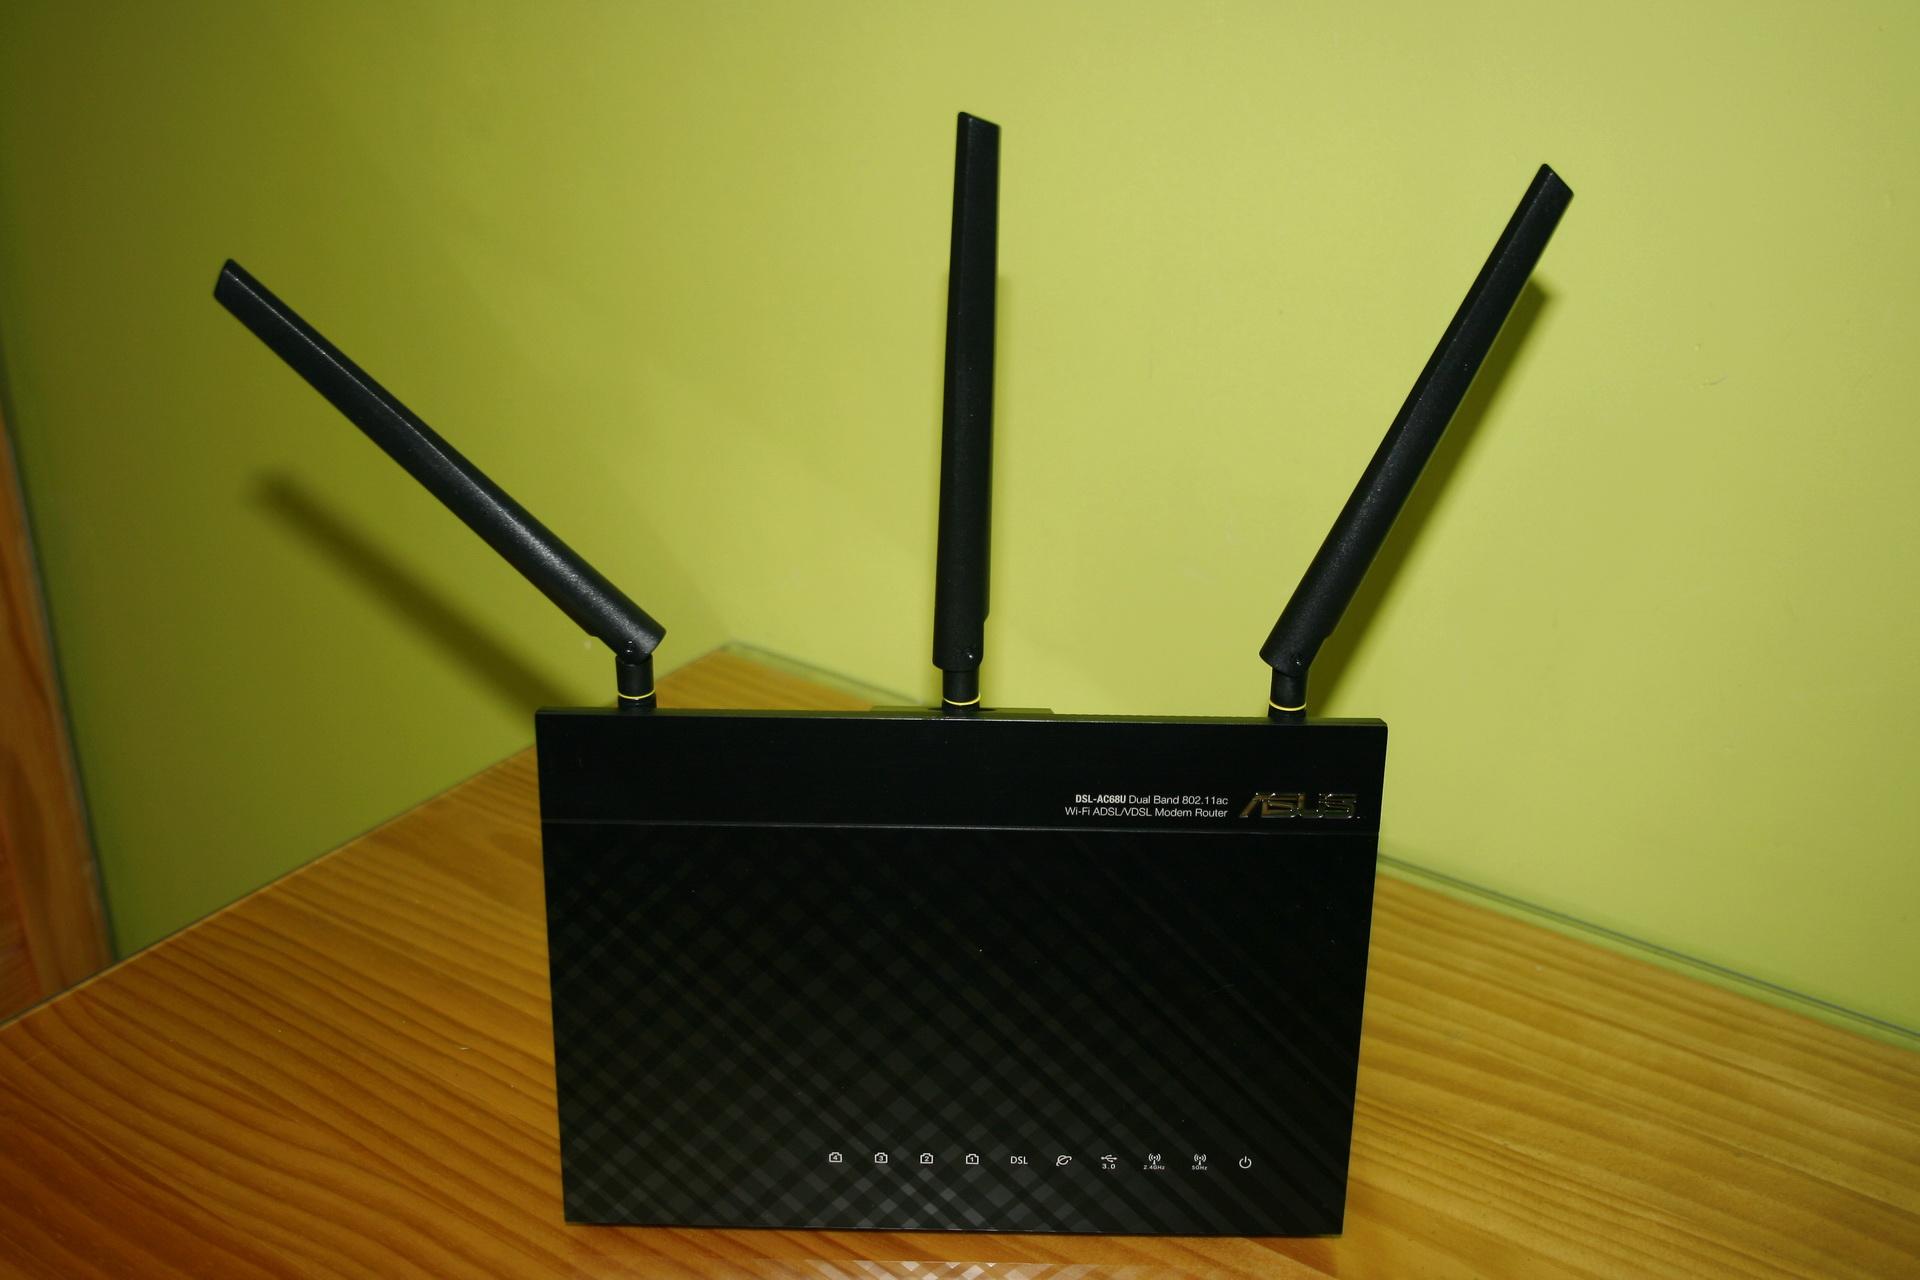 Vista frontal del router ASUS DSL-AC68u